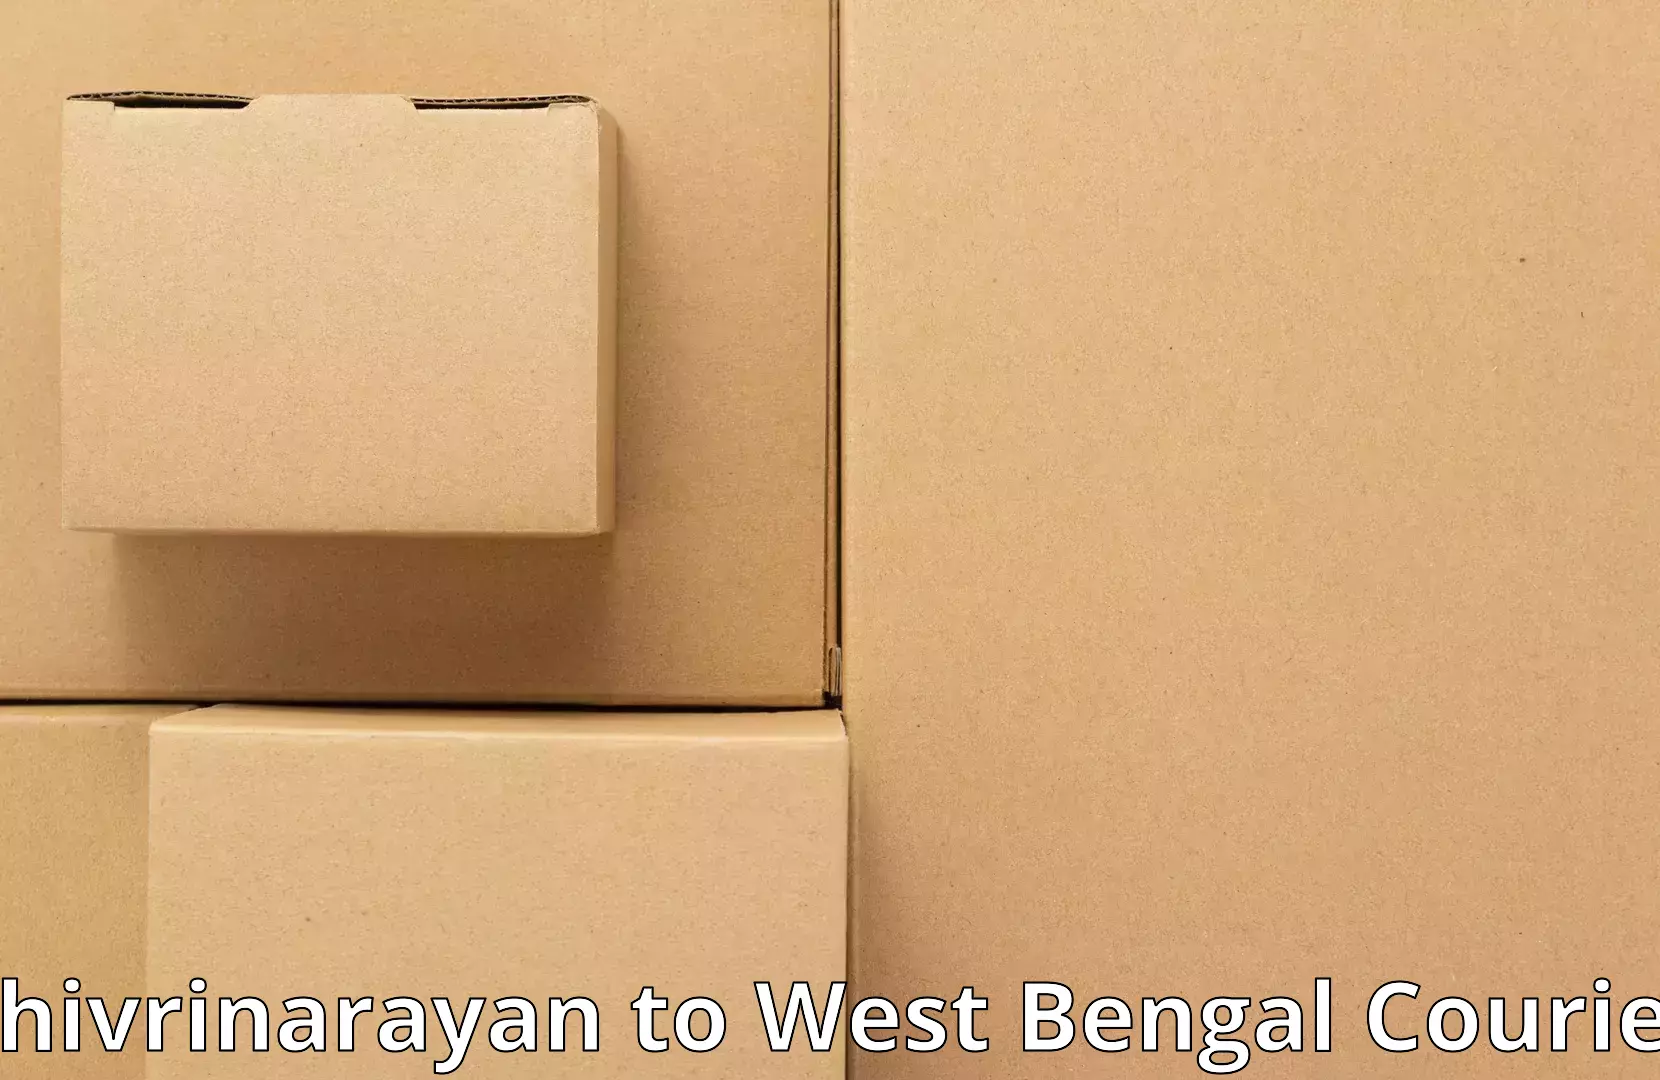 Moving and packing experts Shivrinarayan to Bhaddi